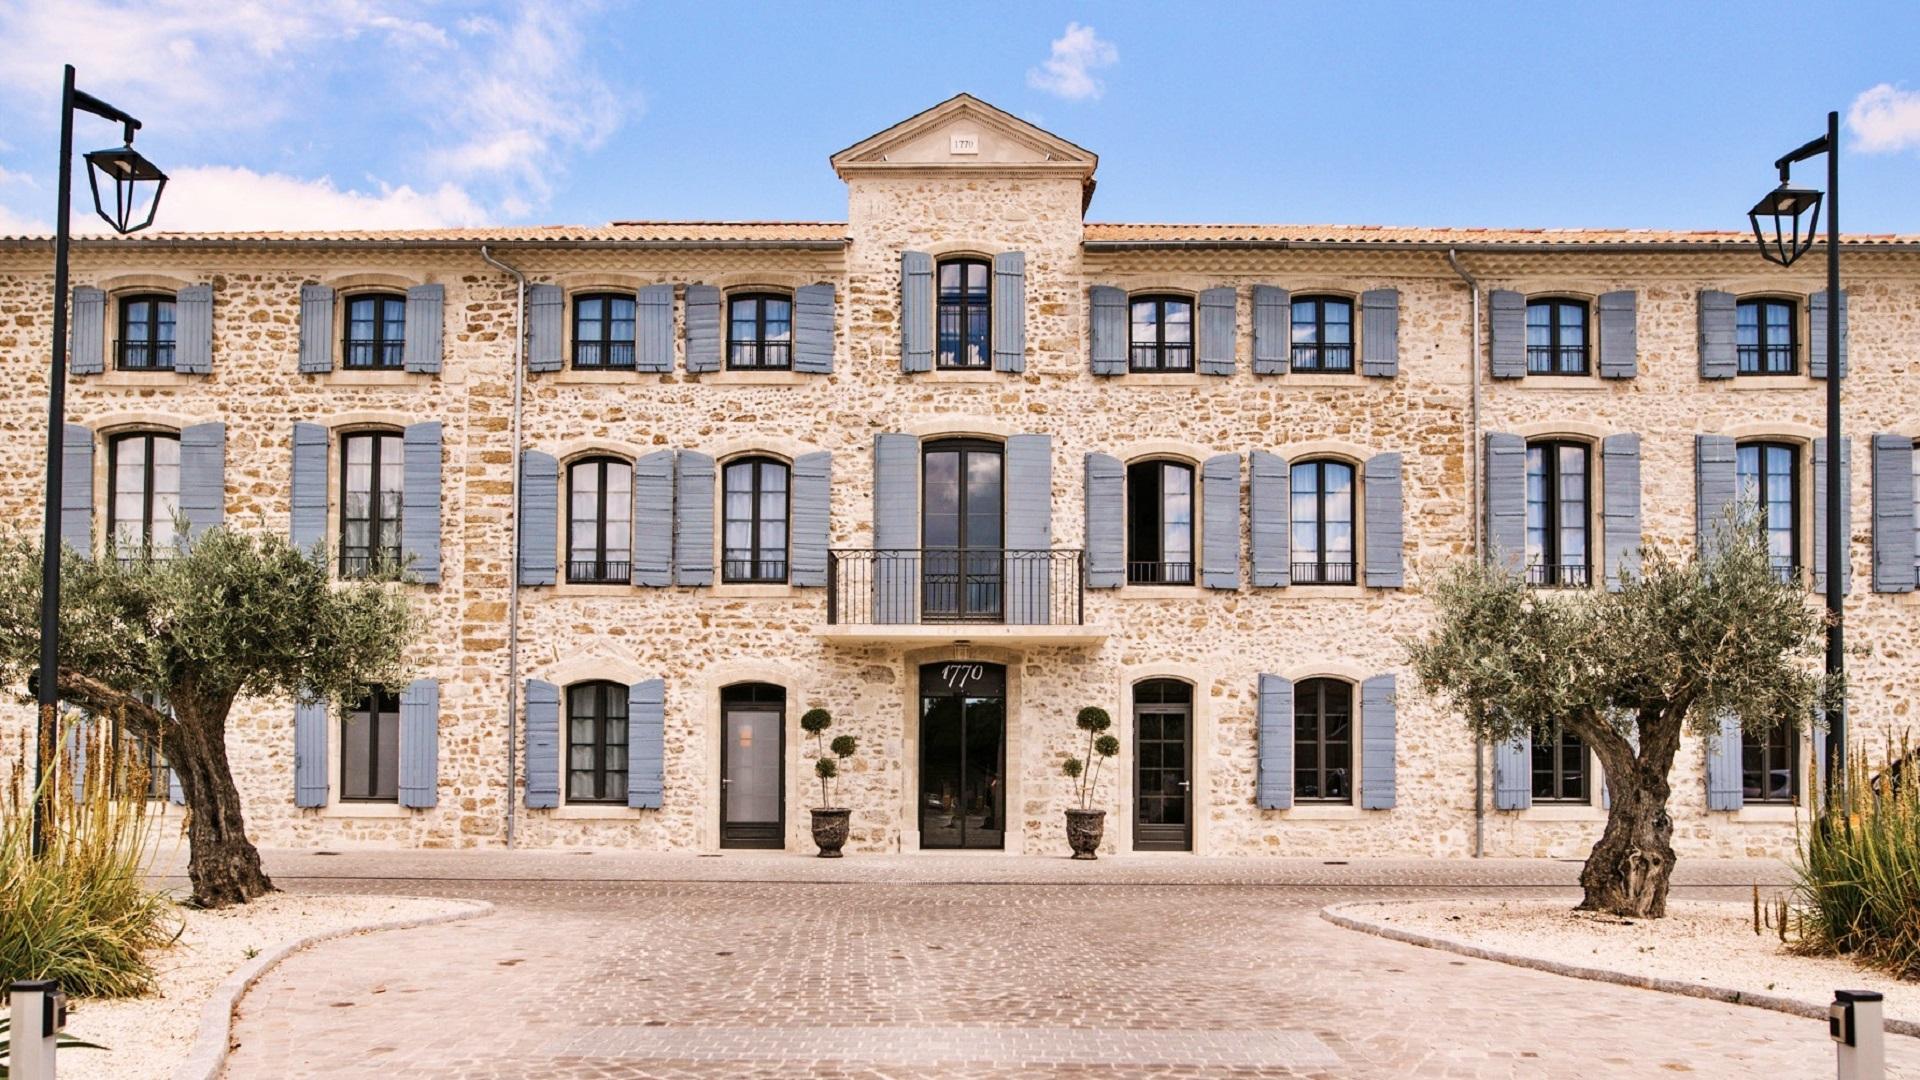 Hotel 1770-avignon-provence-sud-france-facade-seminaires-de-caractere